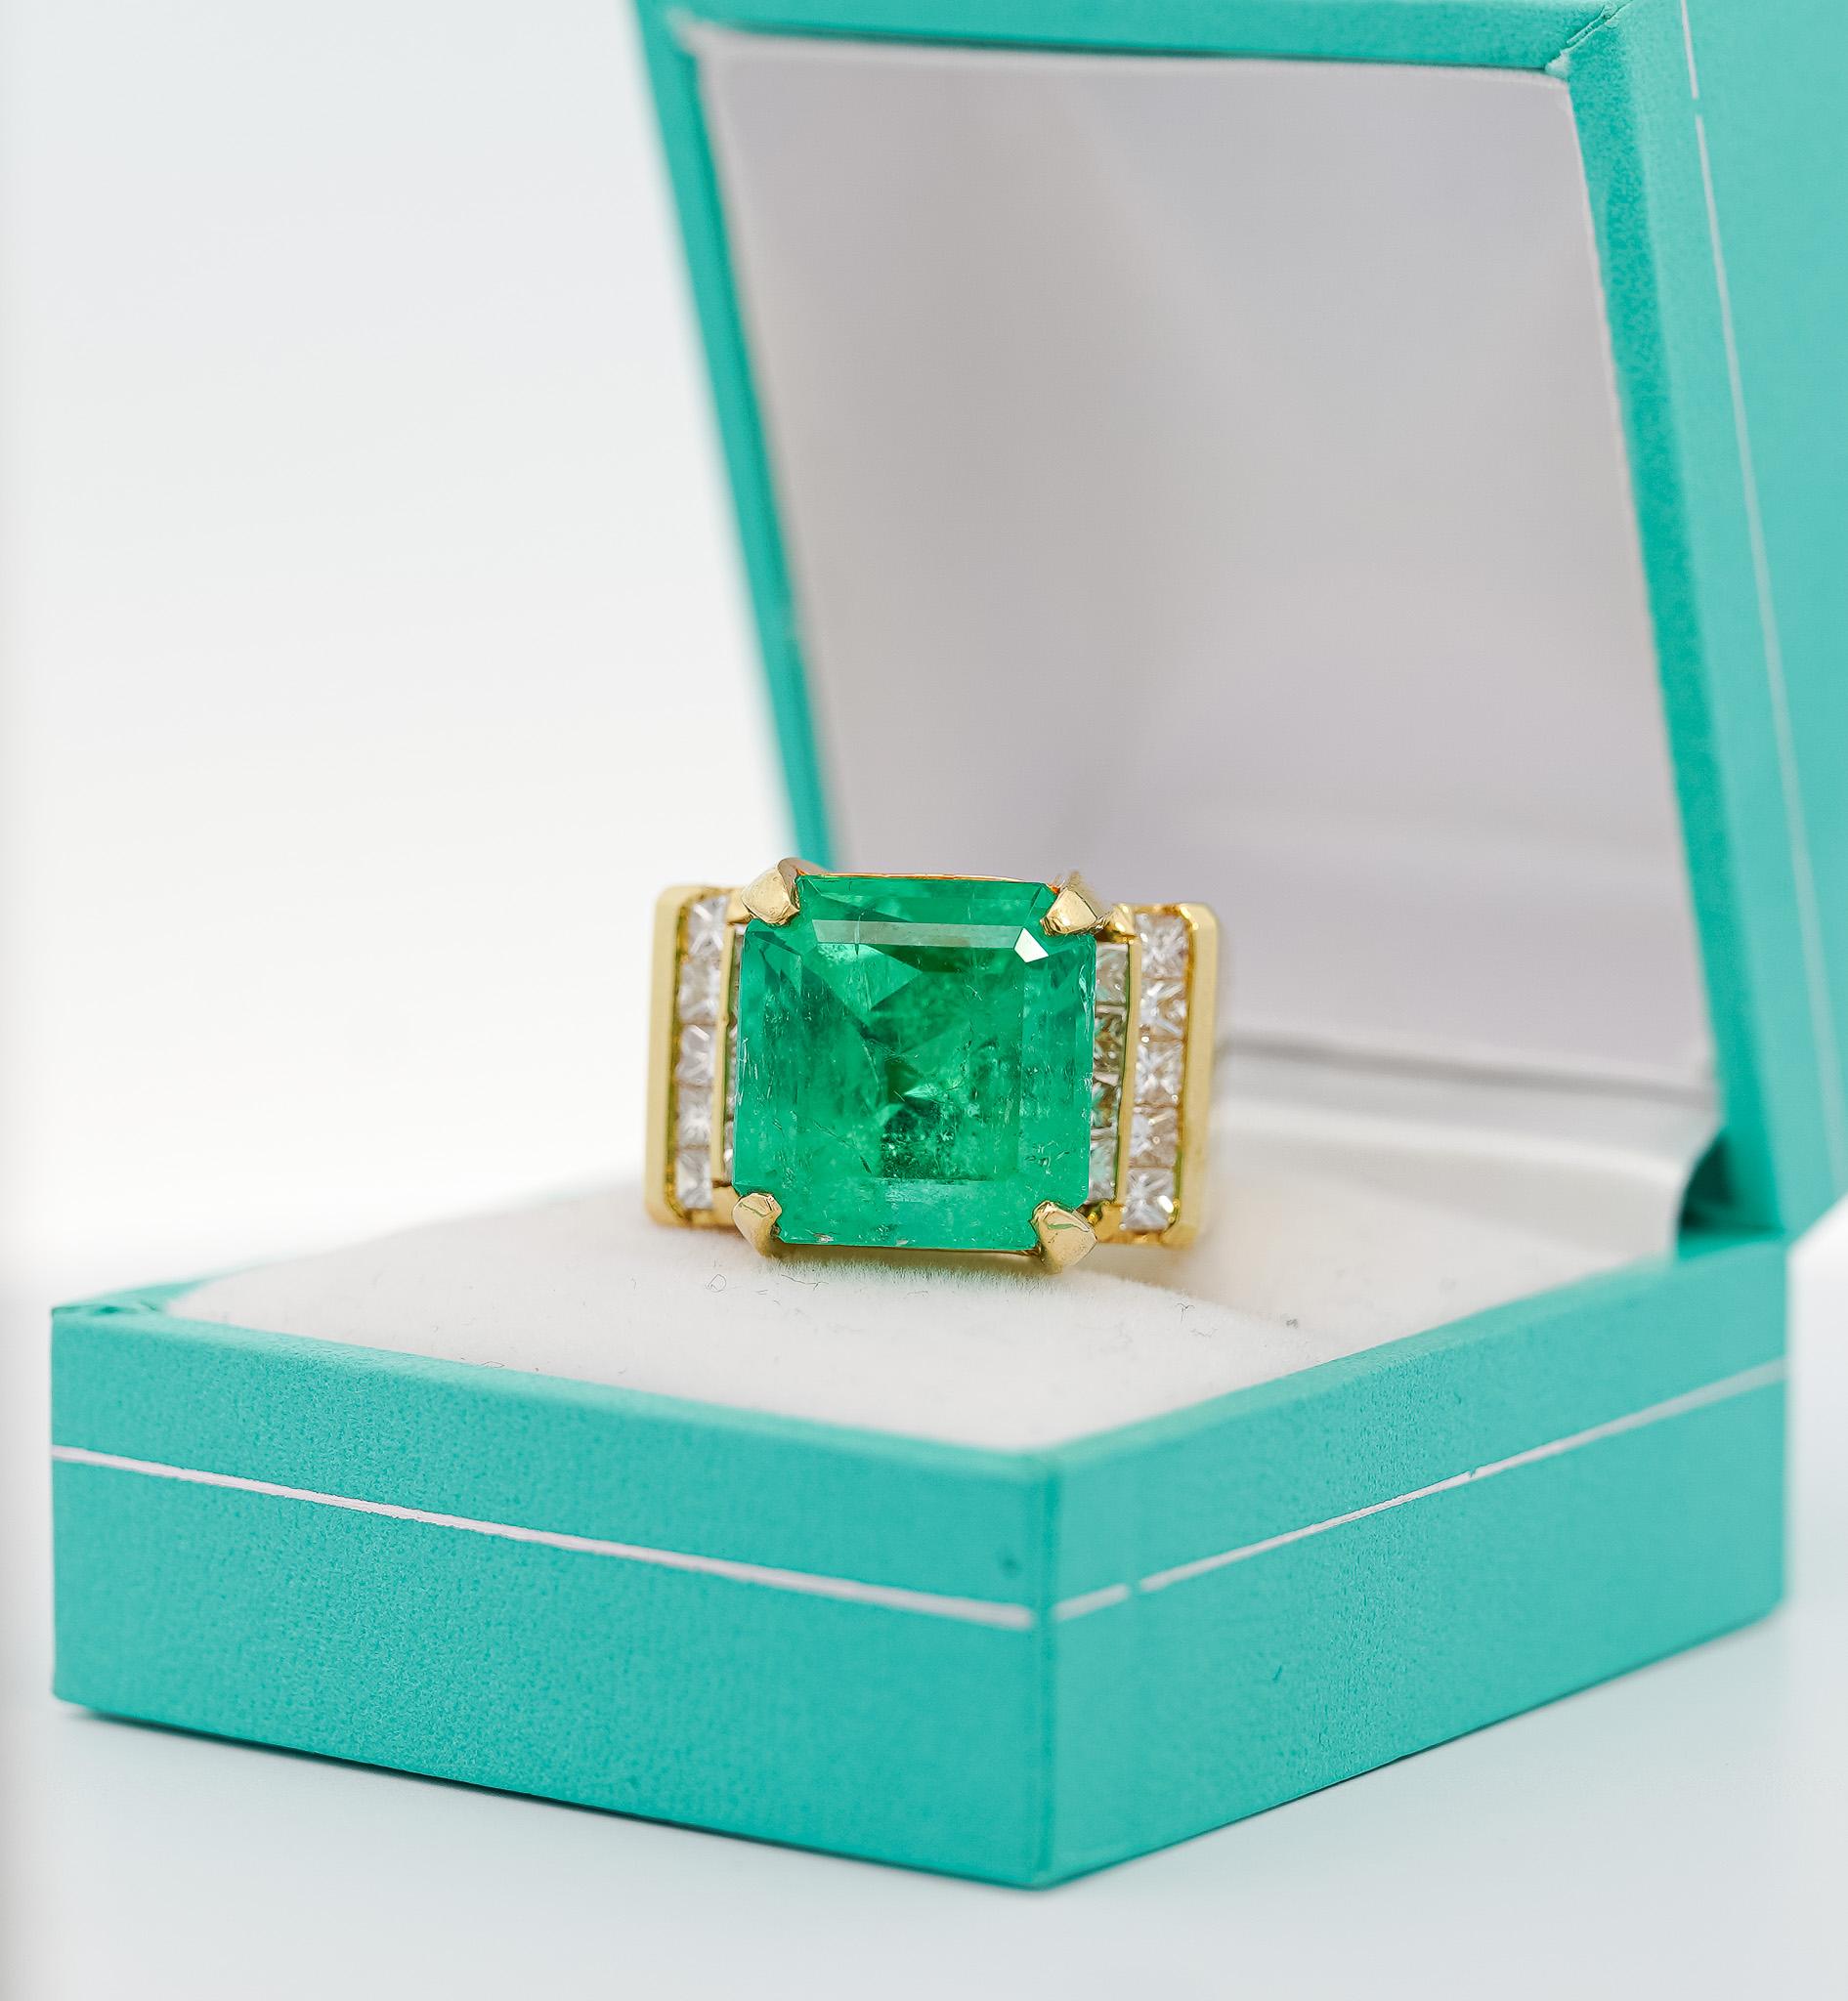 GIA-zertifizierter Ring mit 13 Karat kolumbianischem Smaragd und Diamant im Prinzessinnenschliff aus massivem 18-karätigem Gelbgold. Vintage Ring, ca. 2000. Der Smaragd zeichnet sich durch exzellenten Glanz, Transparenz und eine dichte grüne